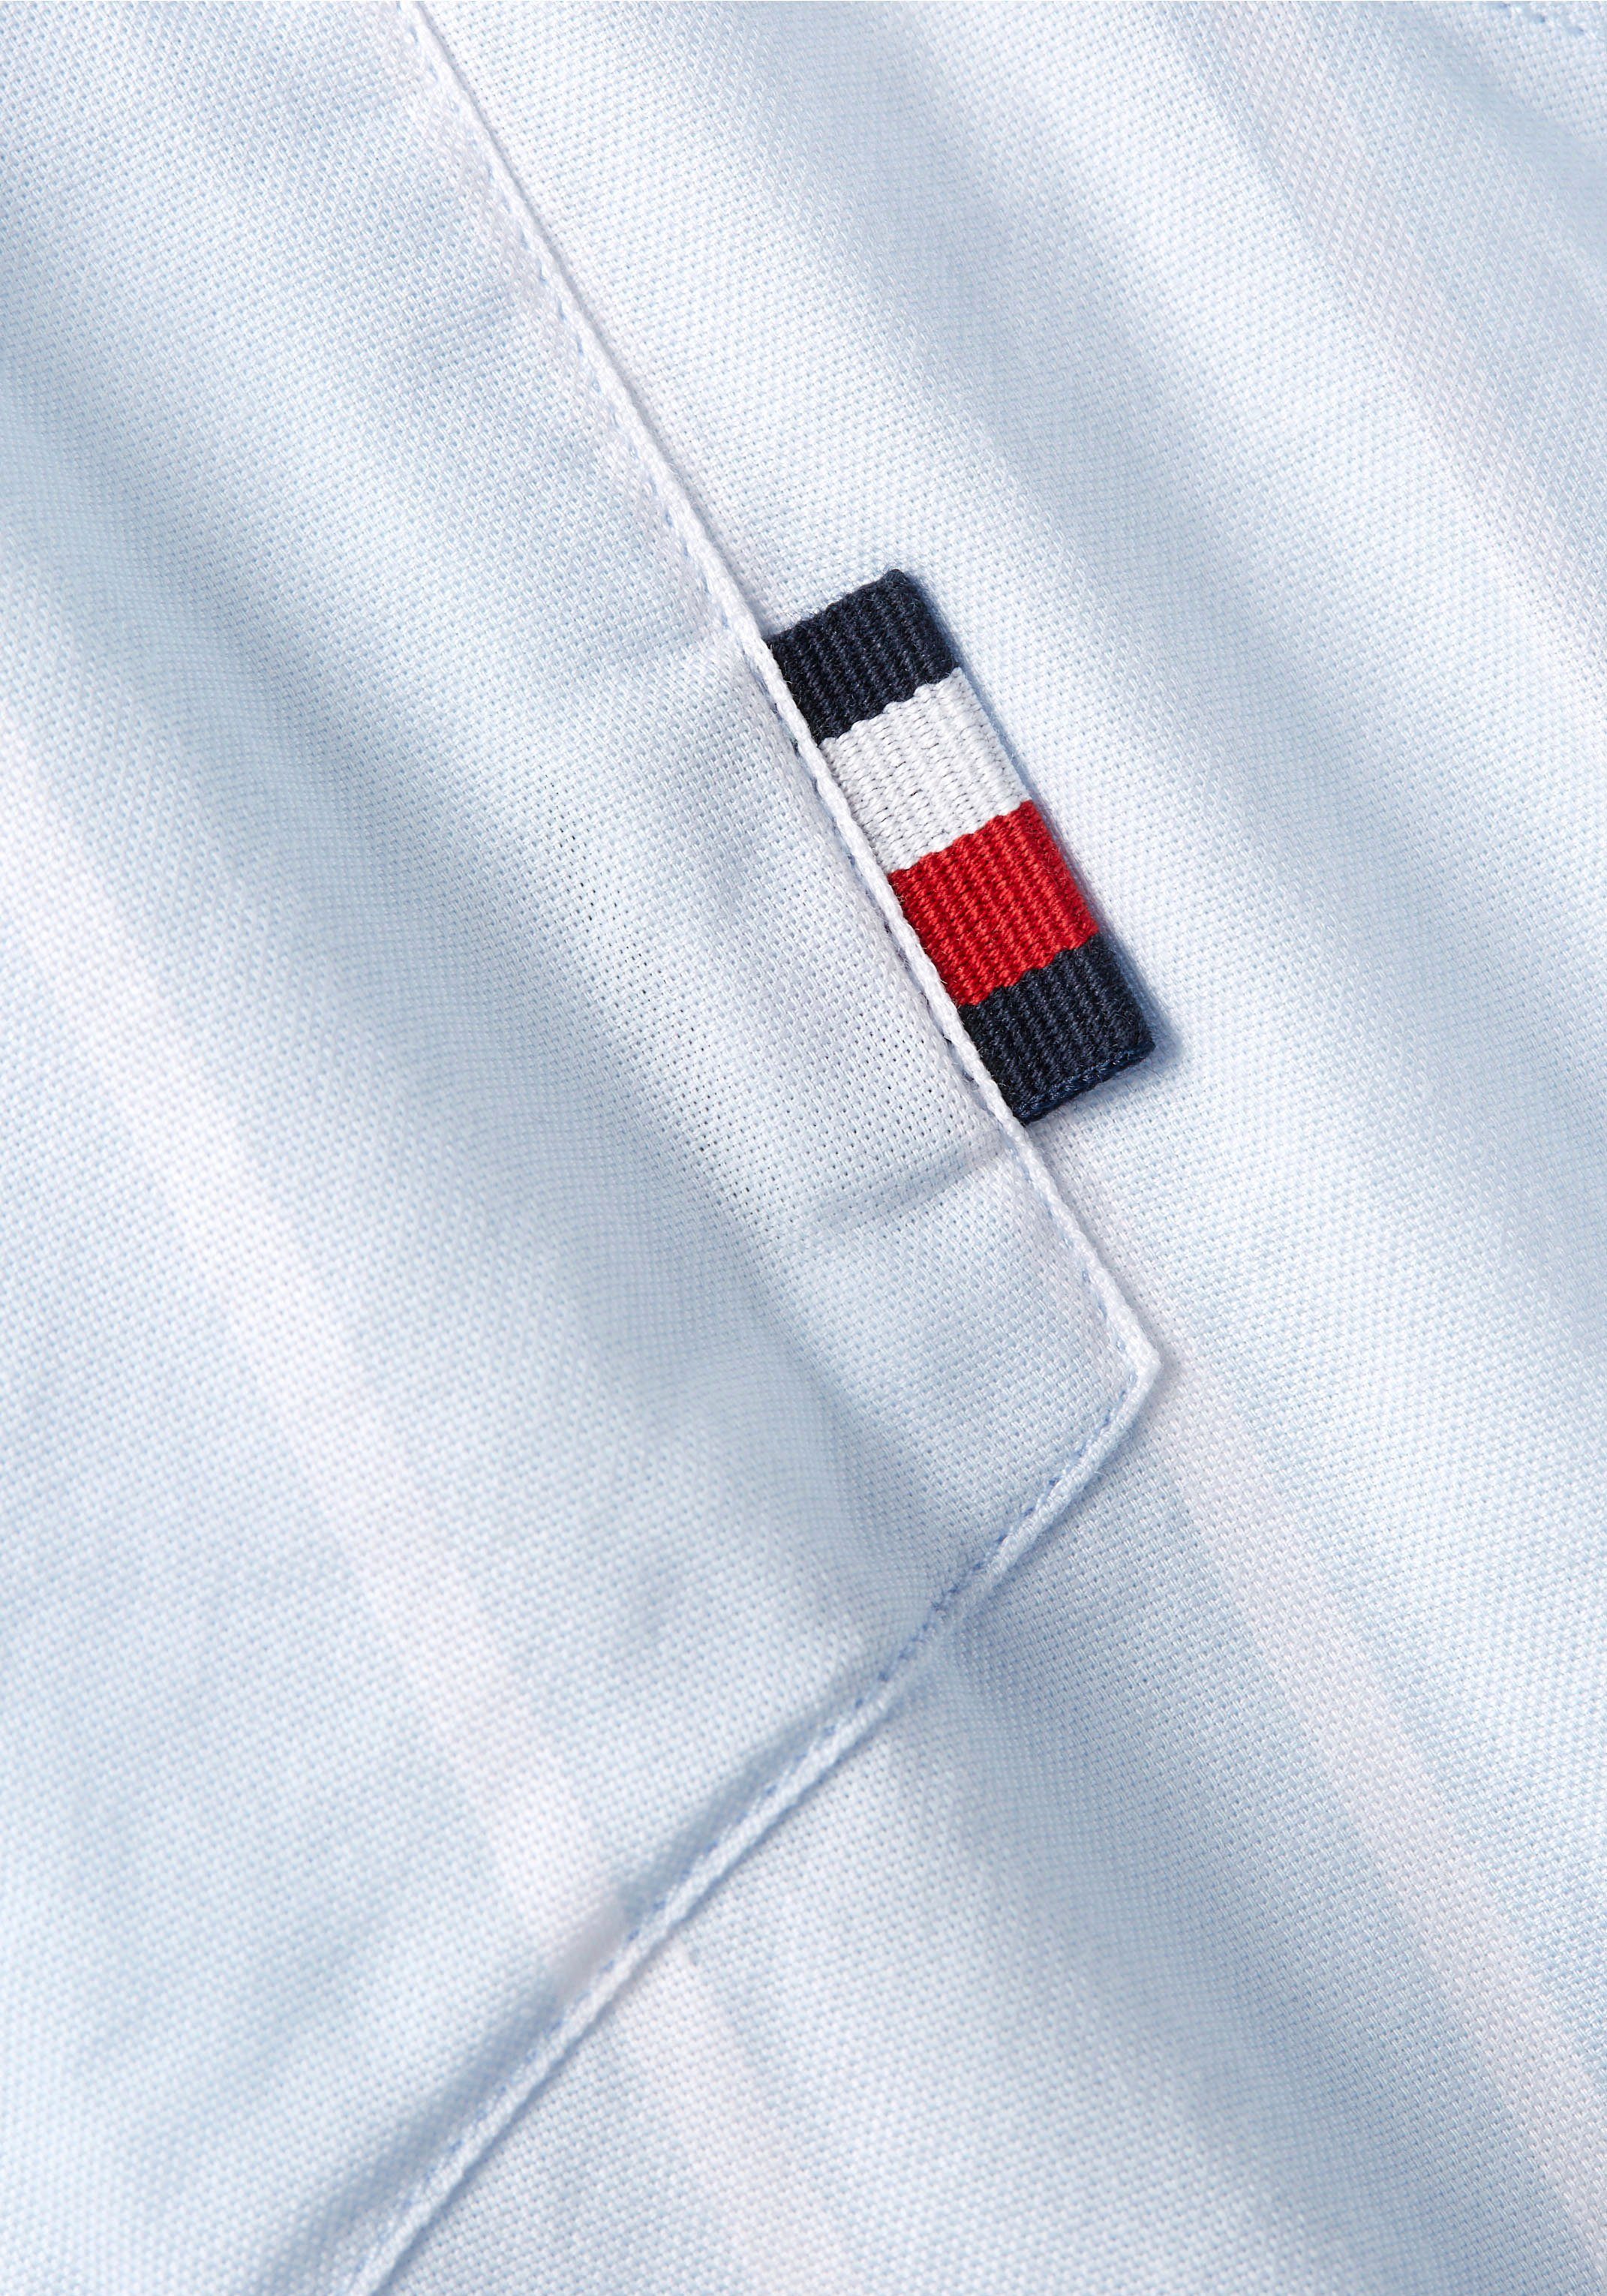 OXFORD SHIRT White mit Langarmhemd RF Blue/Optic Breezy STRIPE Button-down-Kragen Tommy Hilfiger